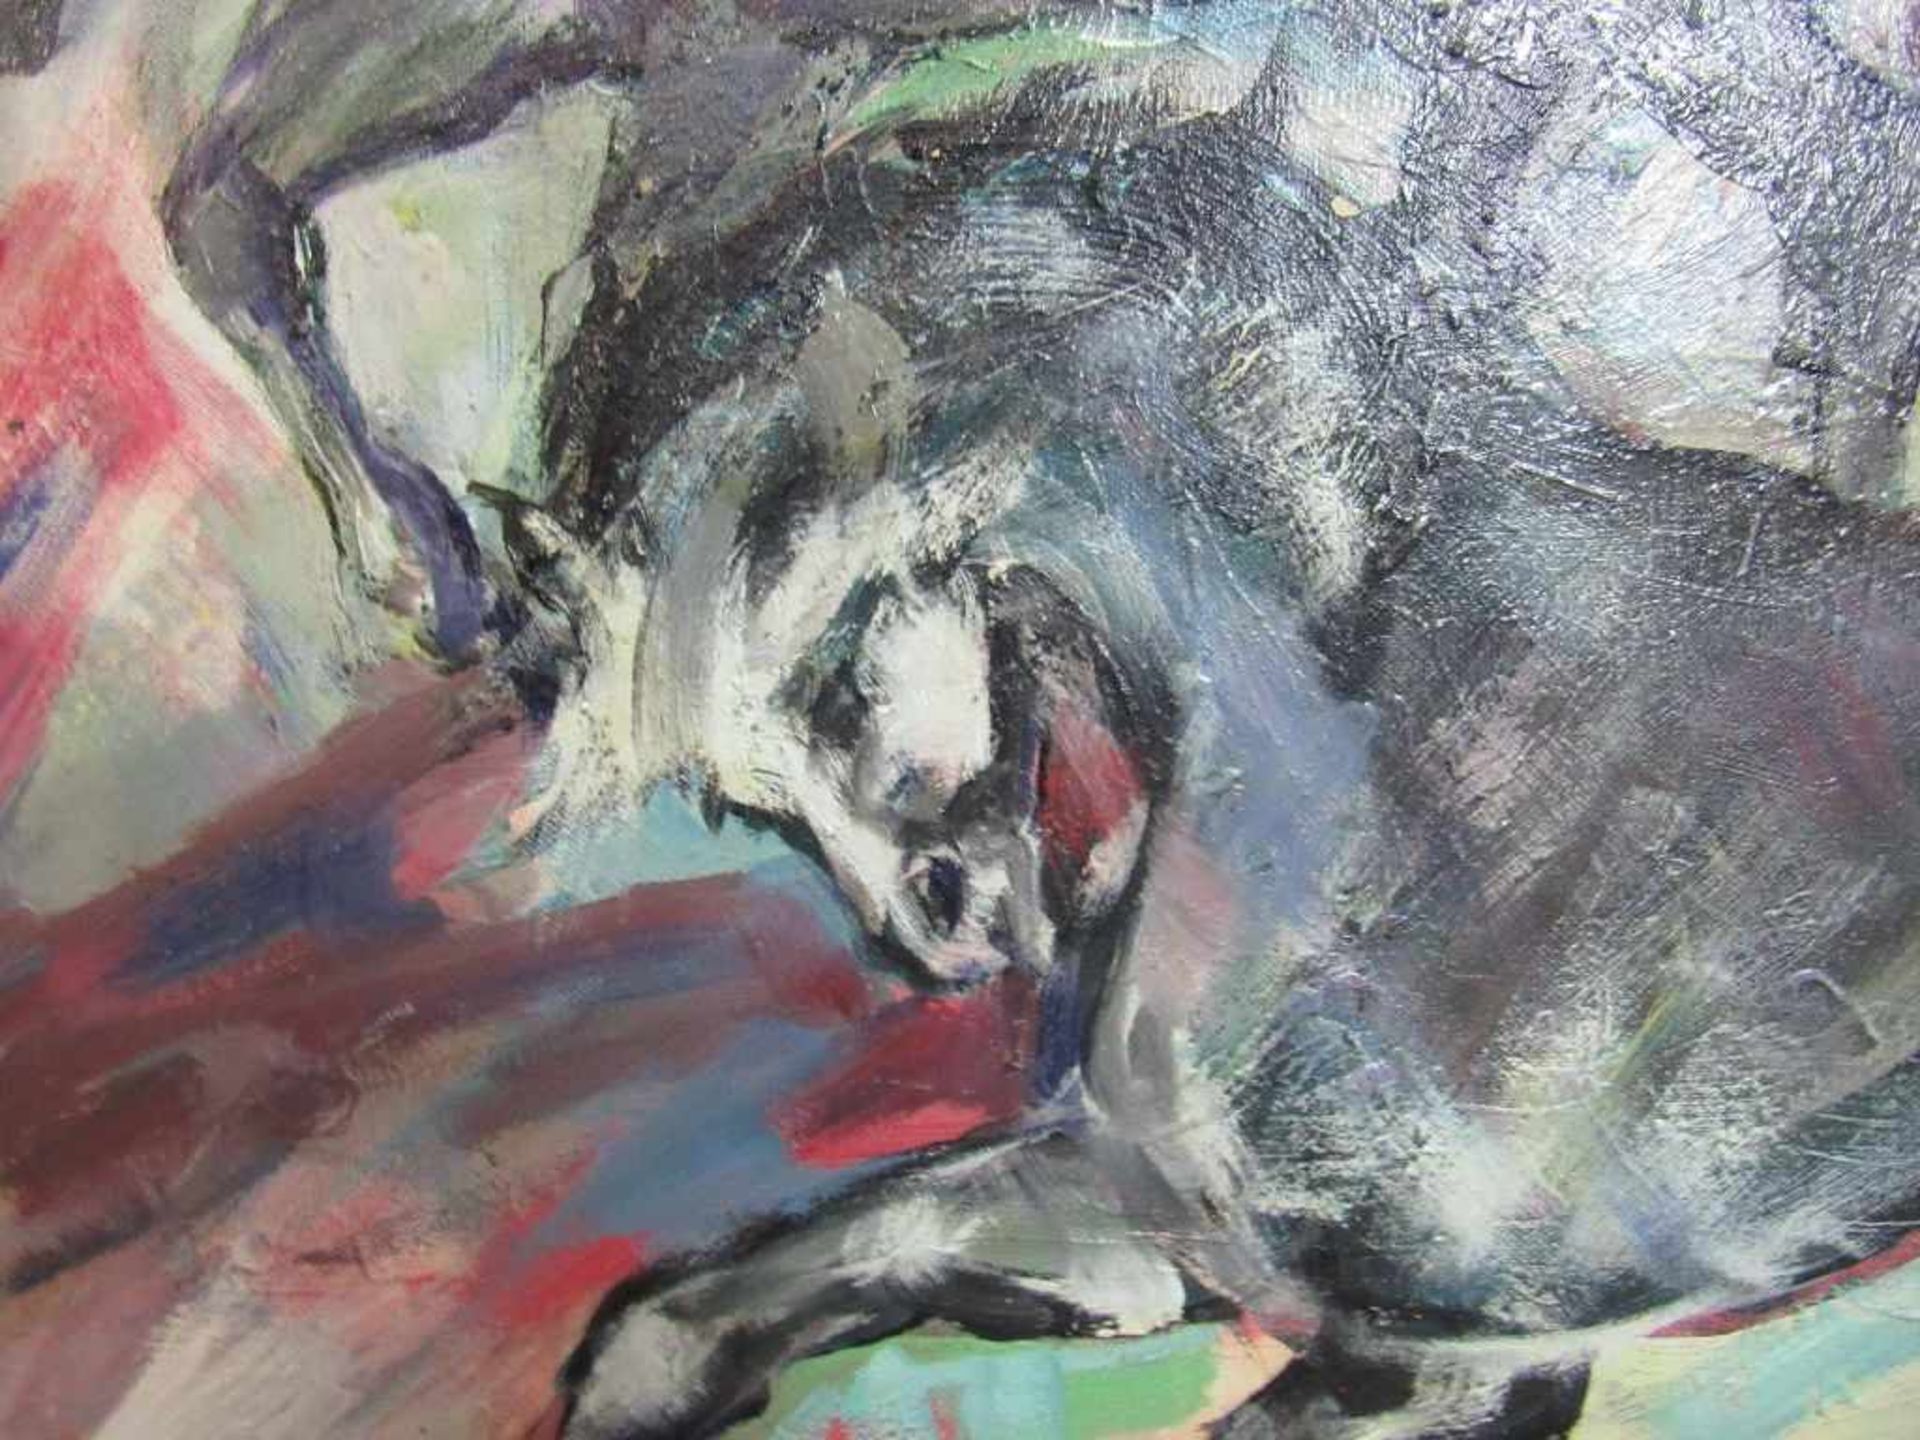 Ölgemälde Öl auf Leinwand Wildpferde ca. 112x92cm signiert Ahrend Wolf beschädigt - Image 5 of 8